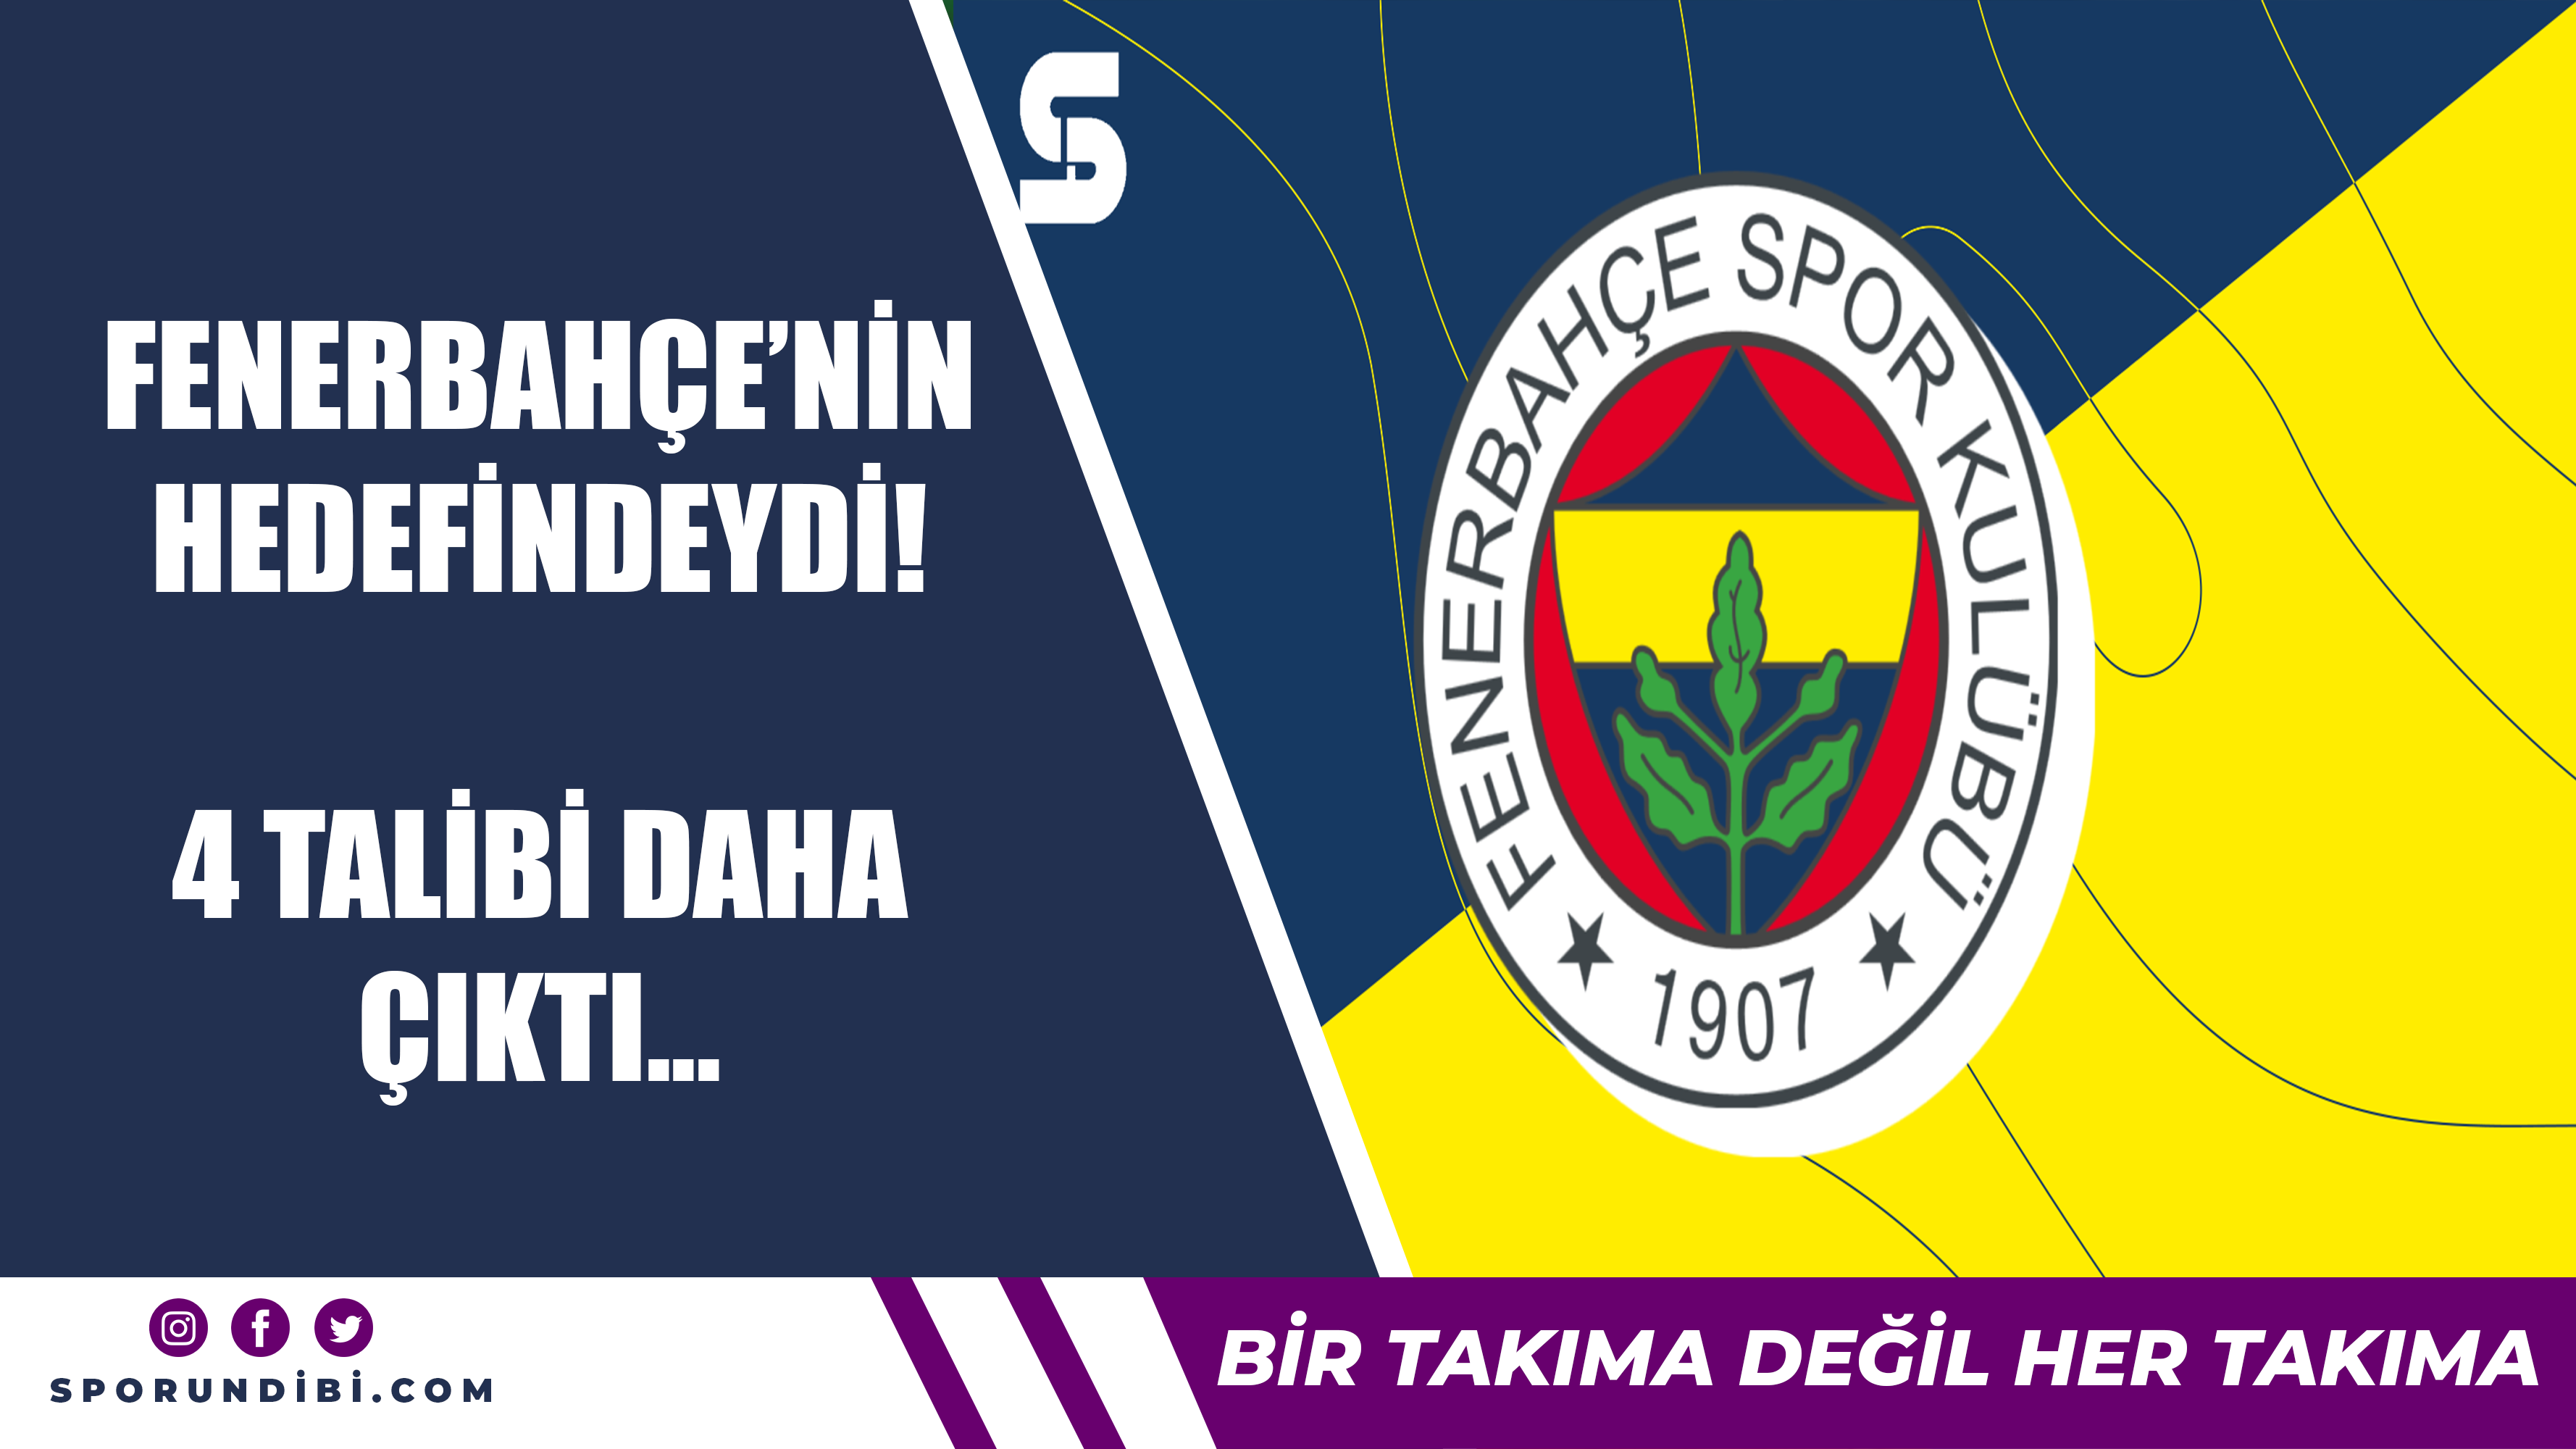 Fenerbahçe'nin hedefindeydi! 4 talibi daha çıktı...